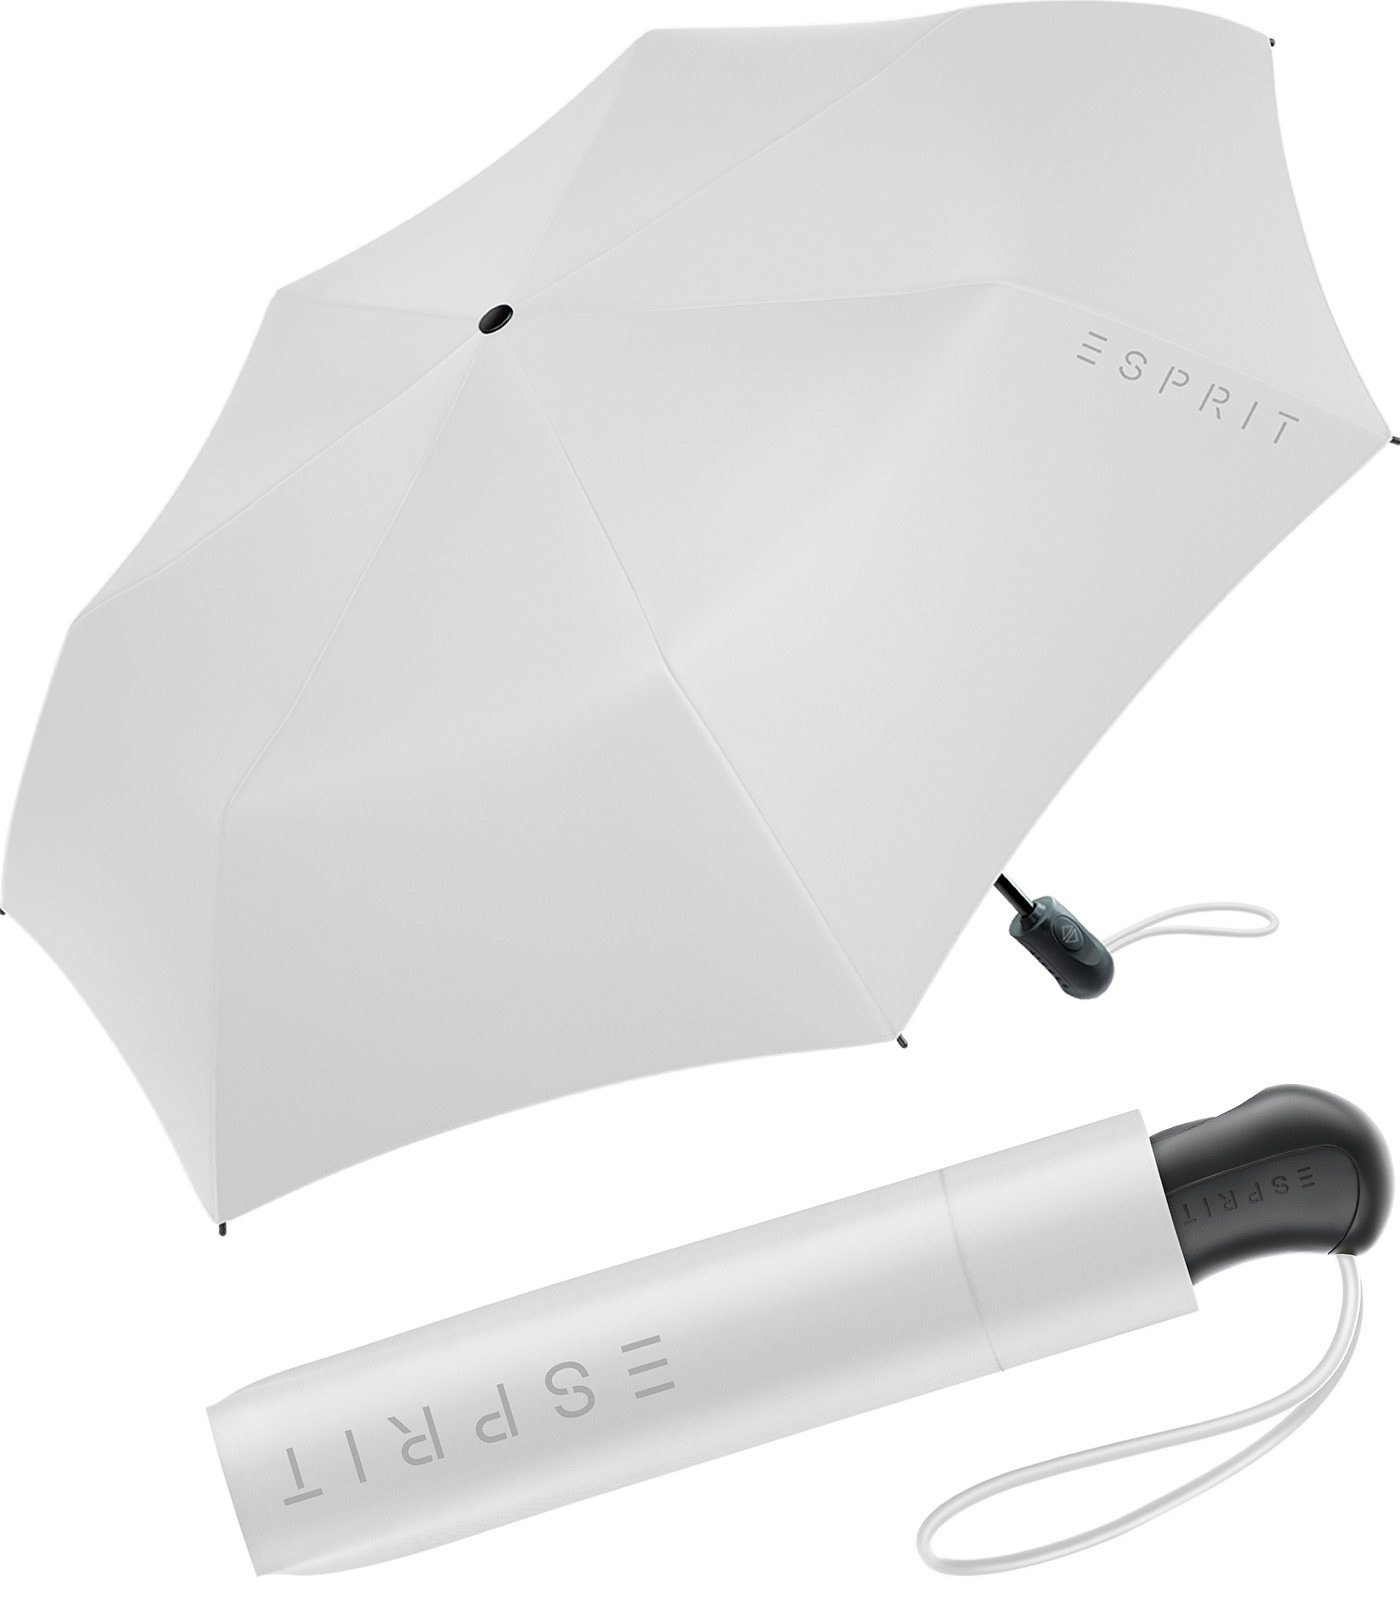 Esprit Taschenregenschirm Damen Easymatic Light Auf-Zu Automatik FJ 2023, stabil und praktisch, in den neuen Trendfarben alt-weiß